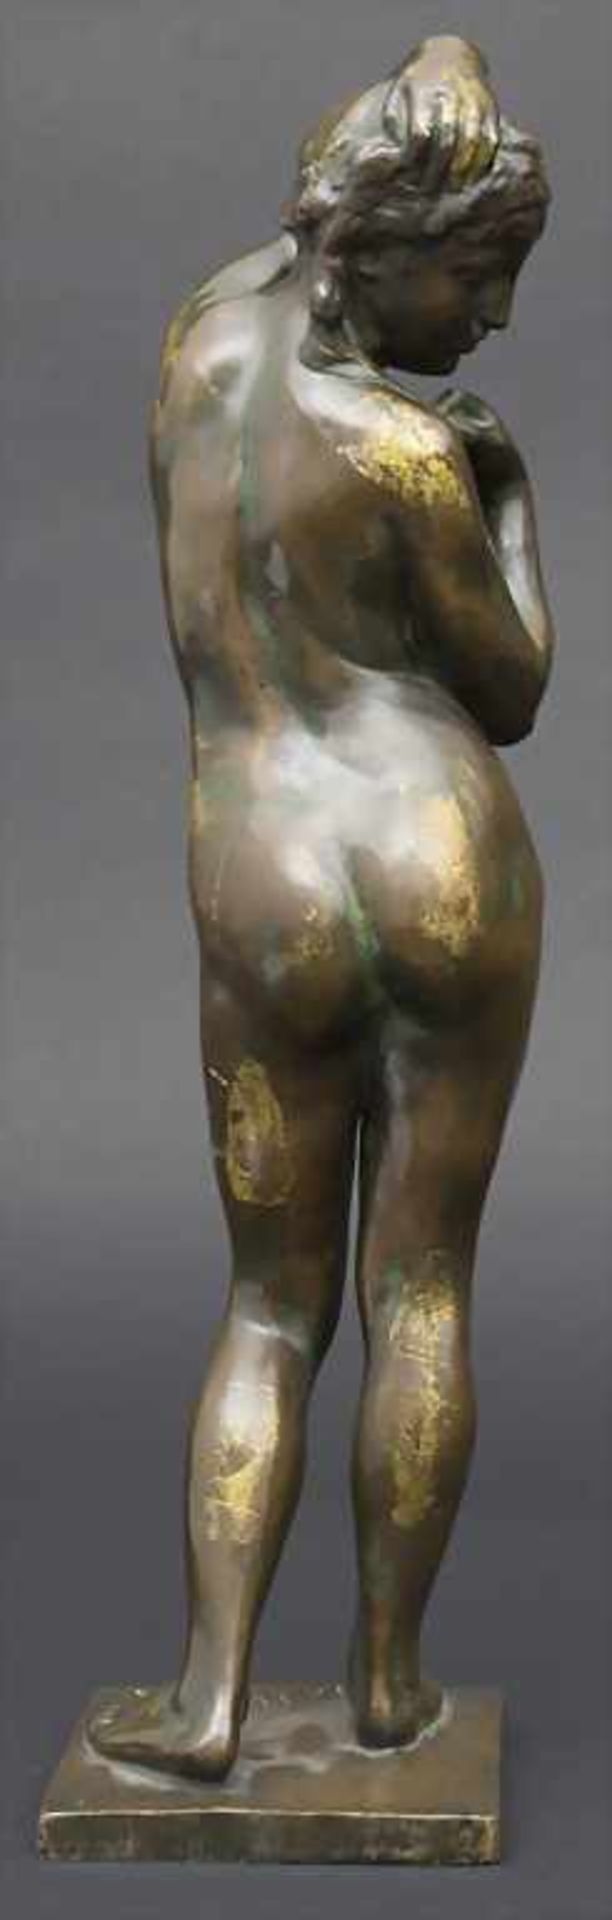 Frans Huygelen 1878-1940, Jugendstil Bronze, Weiblicher Akt / An Art Nouveau bronze sculpture of a - Image 3 of 6